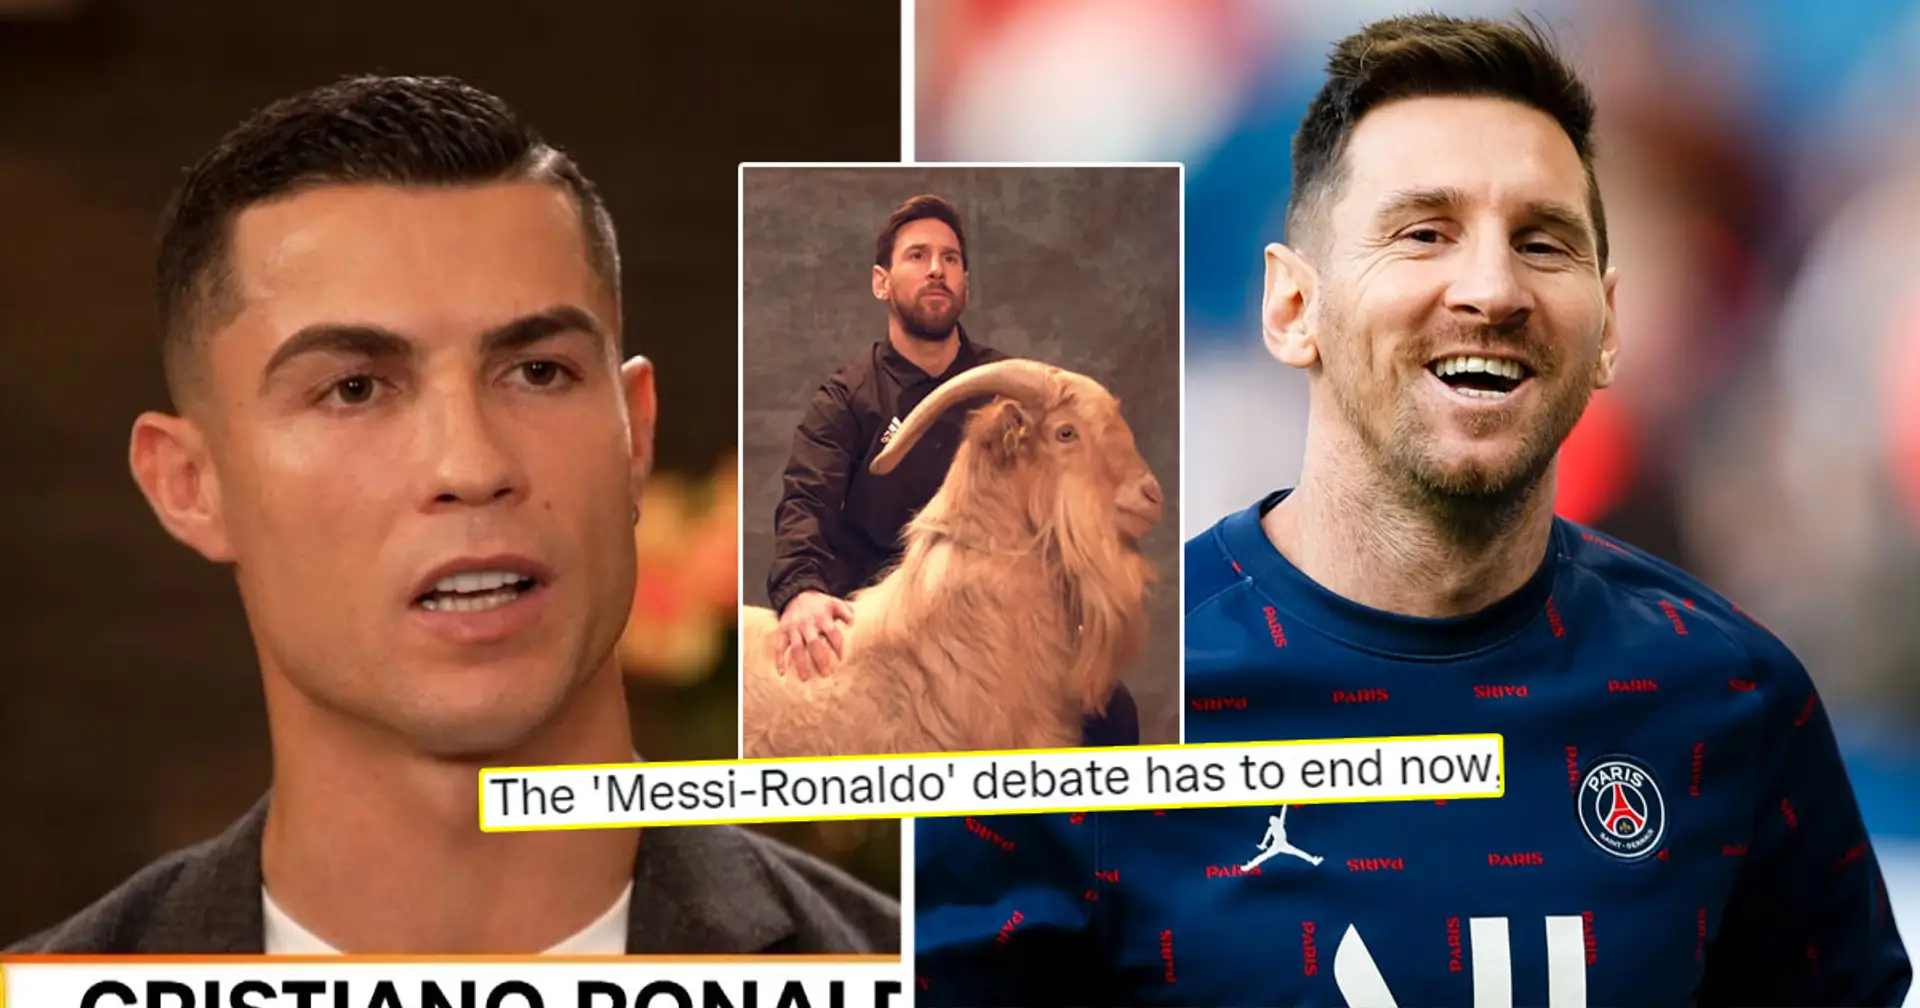 'No puedes comparar a Messi con este llorón': Incluso los fans del Man United se vuelven contra Cristiano tras su última entrevista